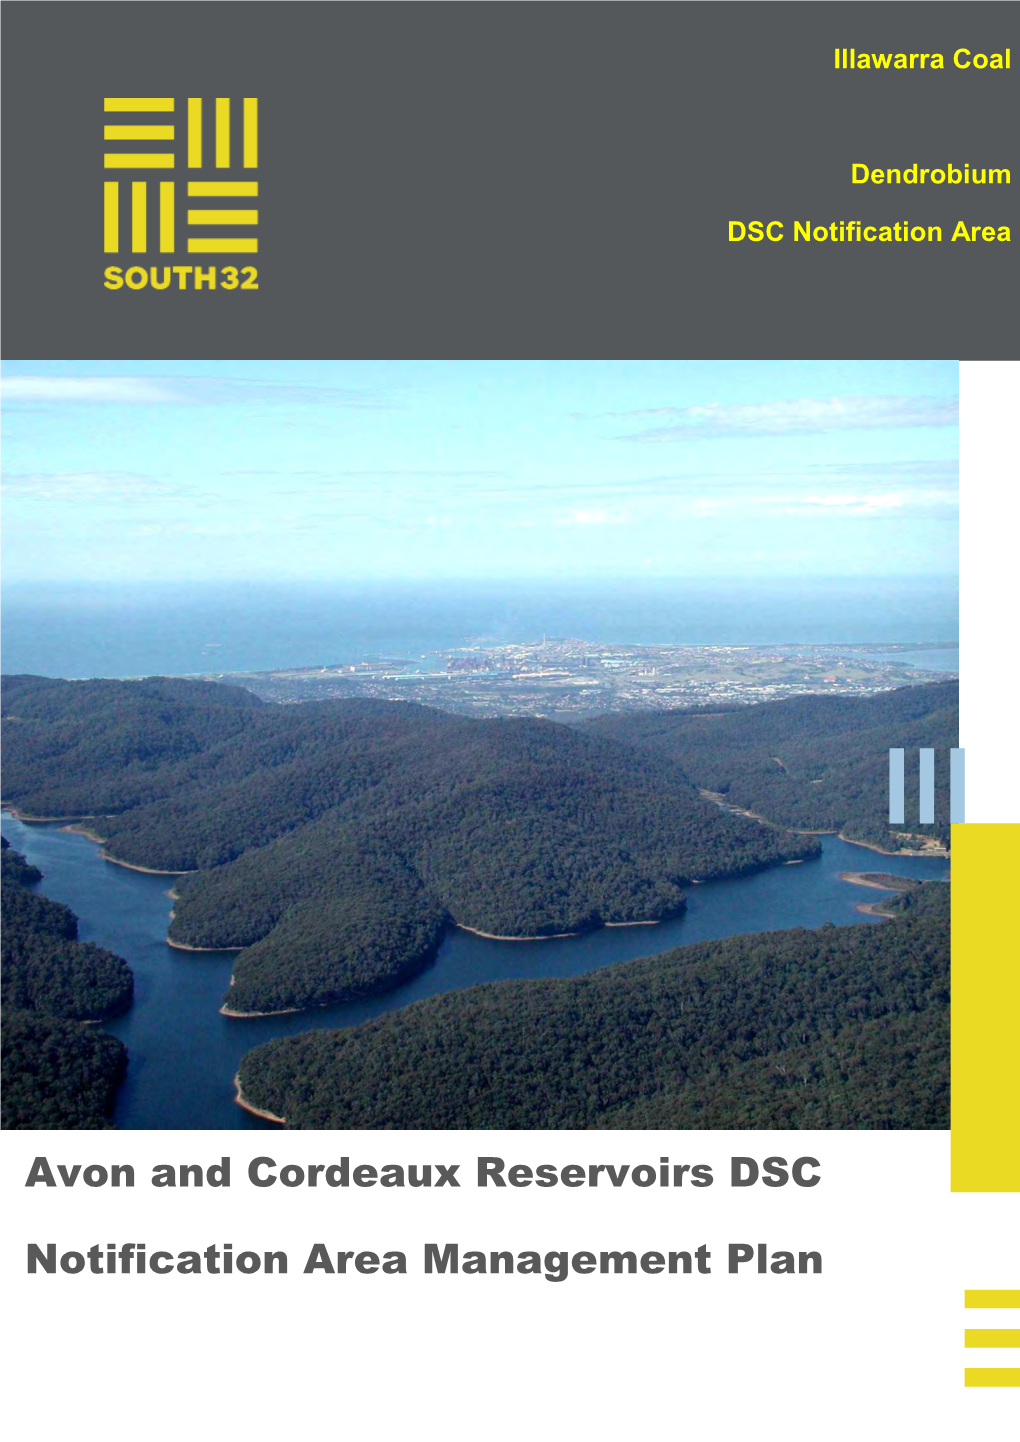 Cordeaux Reservoirs DSC